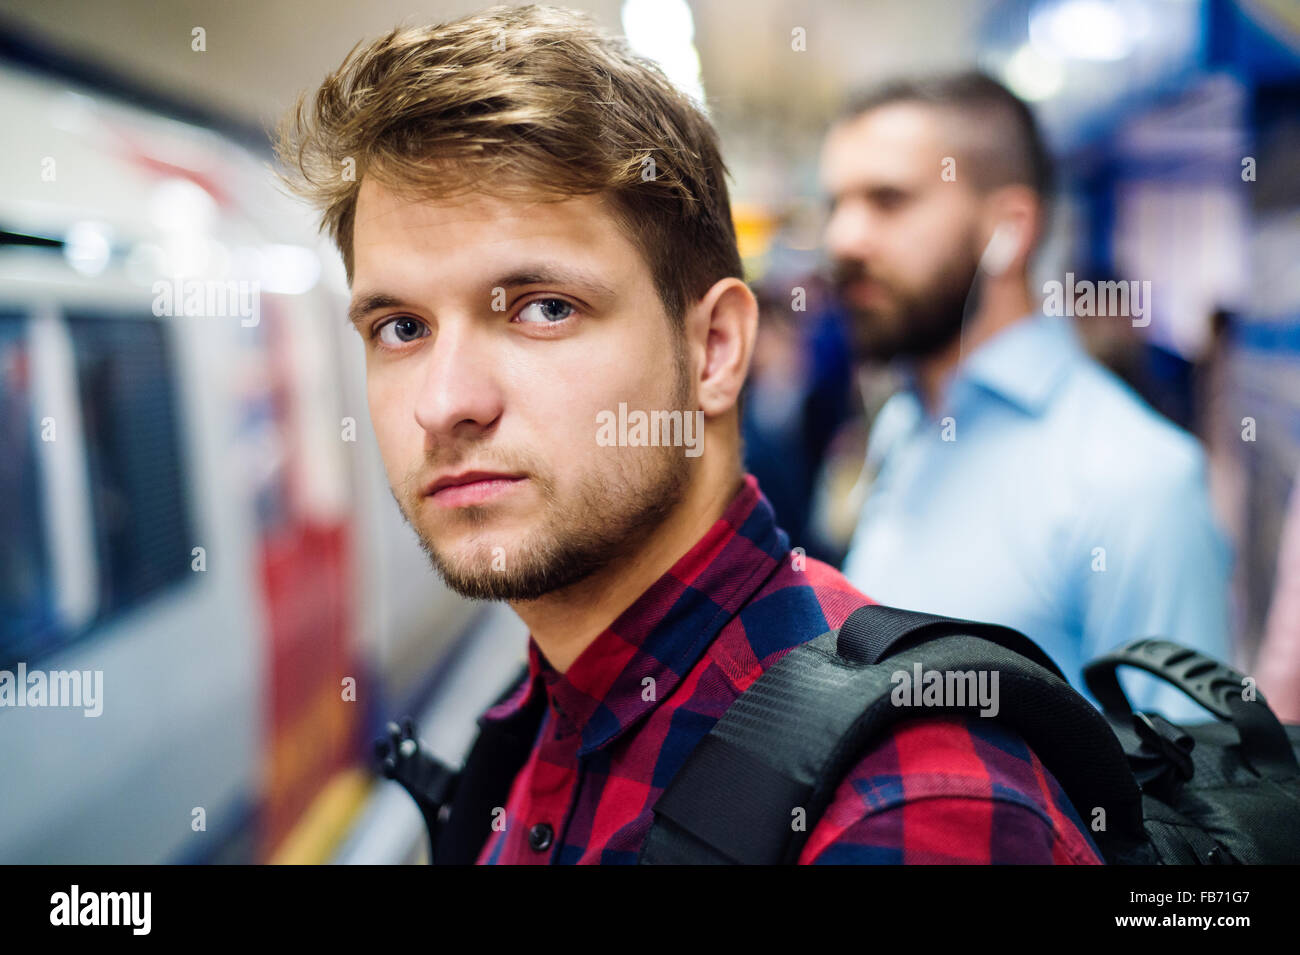 Jeune homme dans le métro Banque D'Images